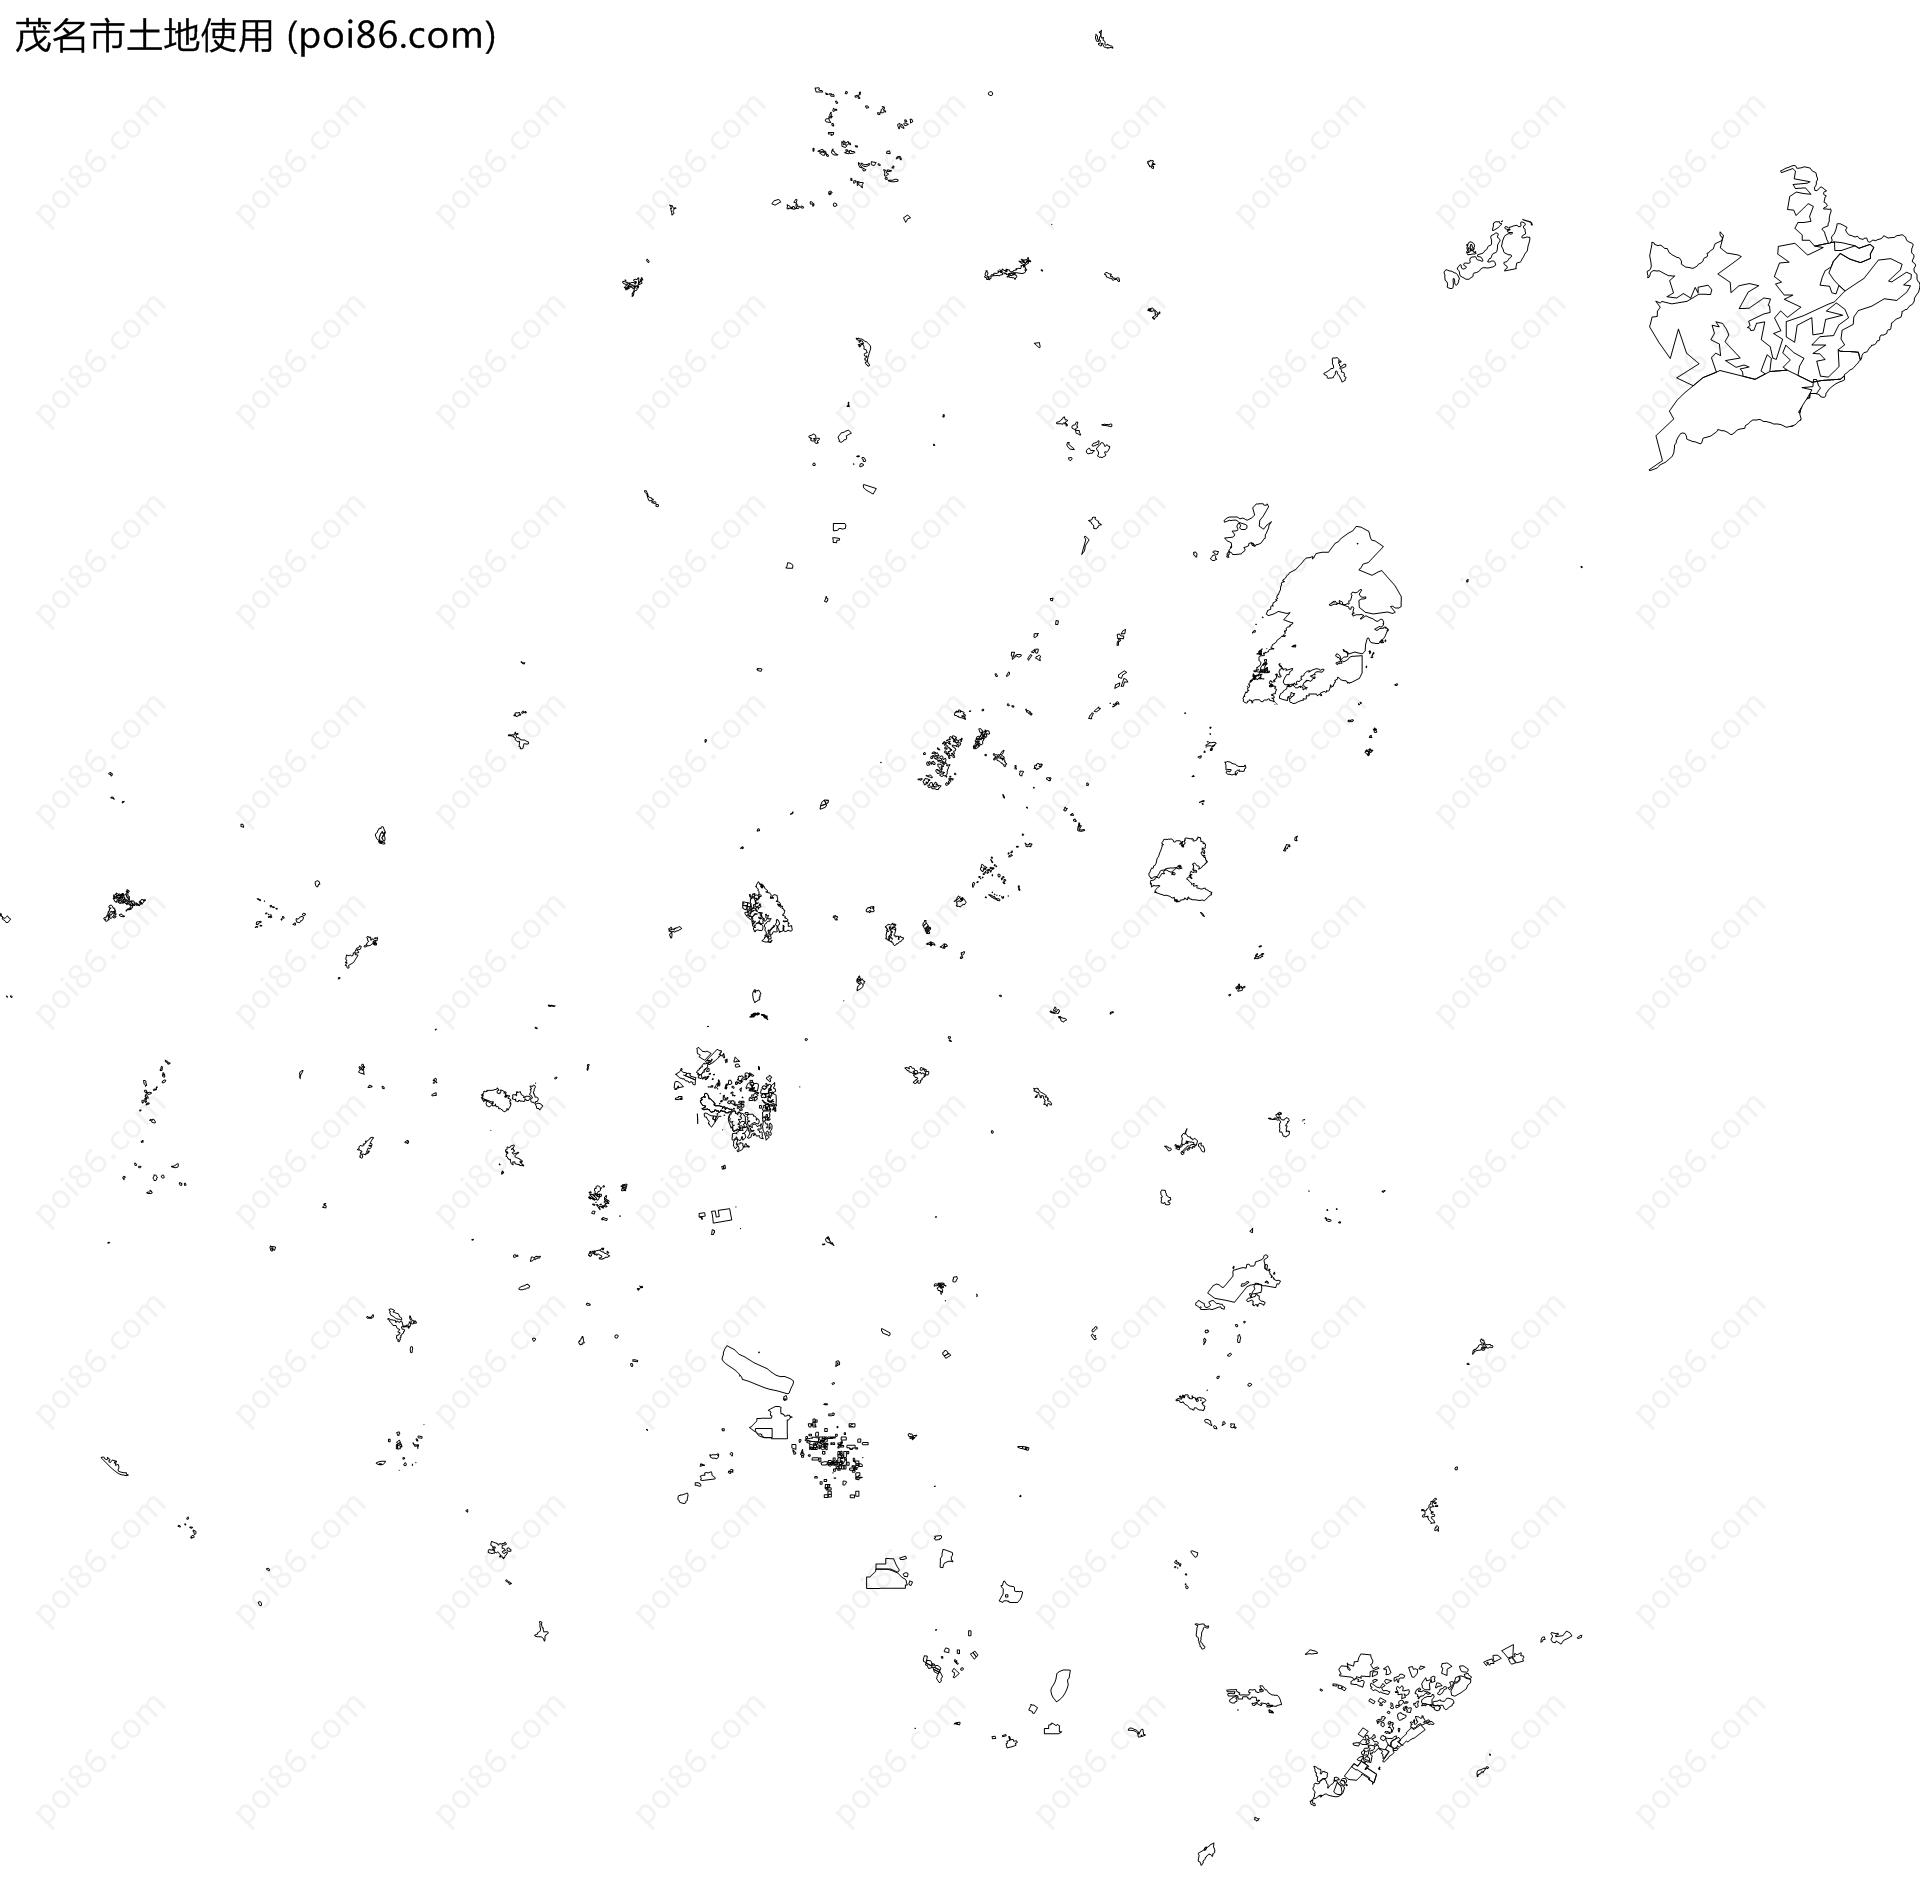 茂名市土地使用地图